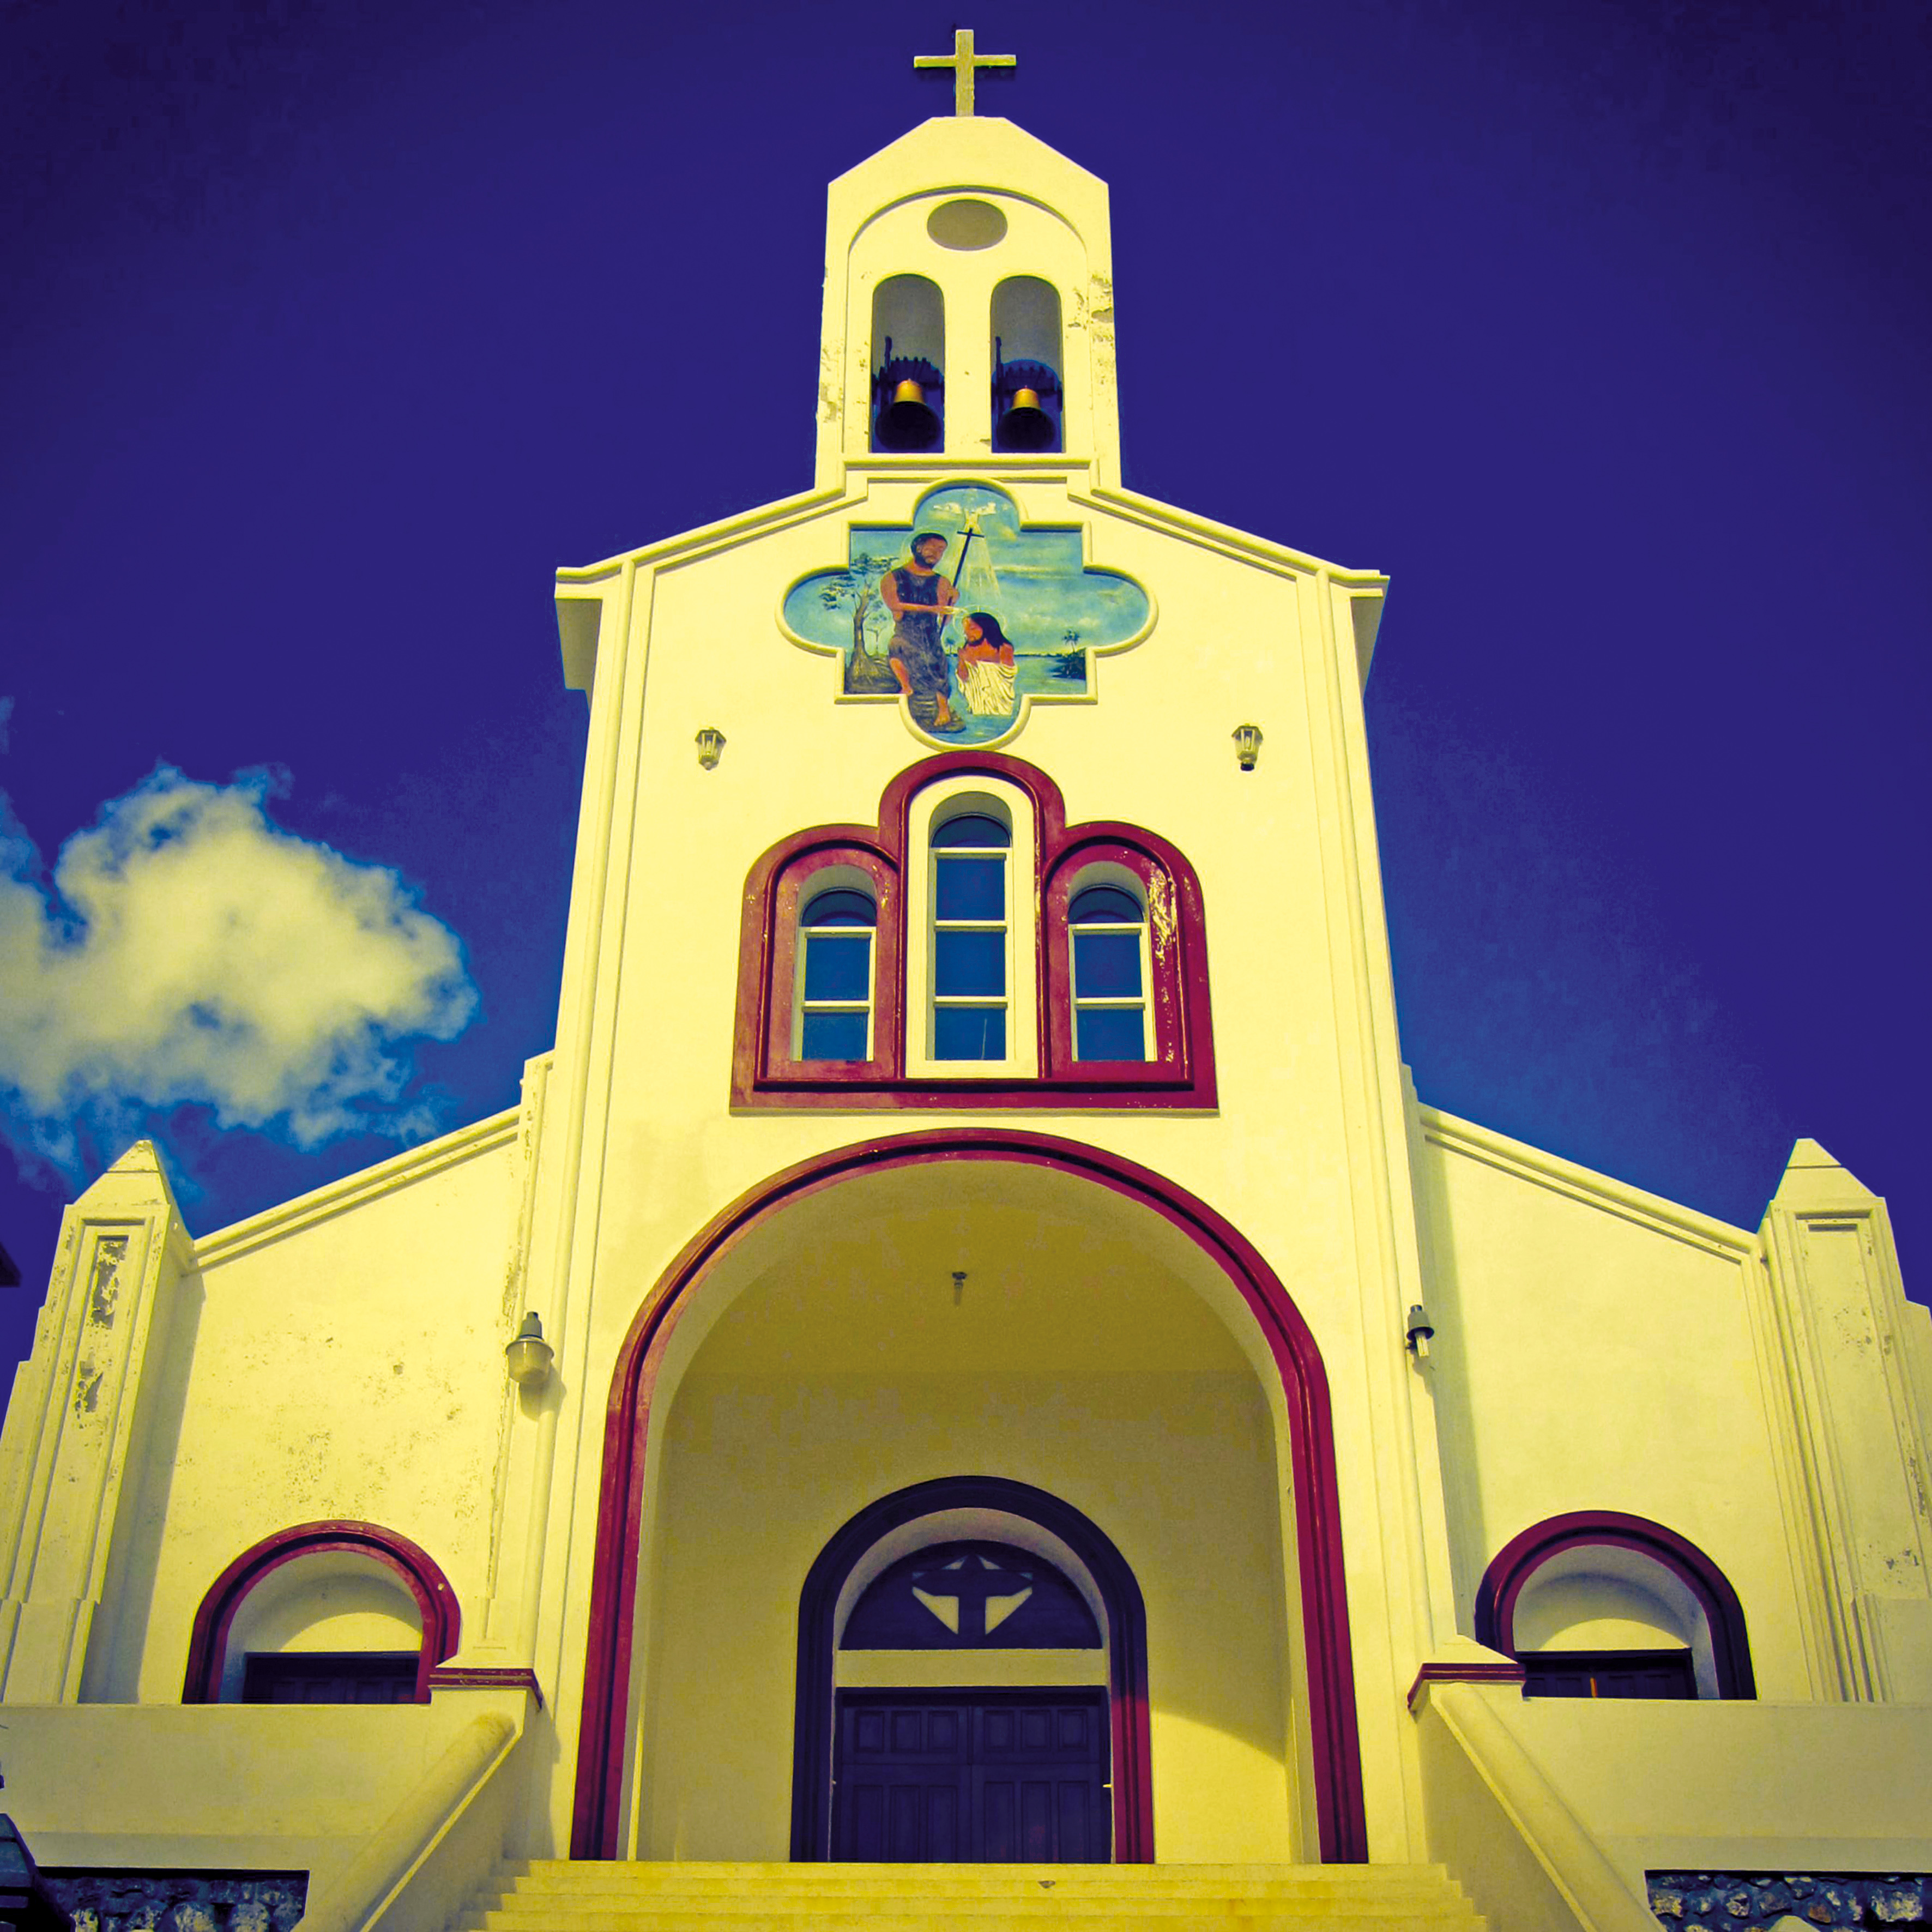 Kościół pod wezwaniem
św. Jana Chrzciciela
w La-Vallée-de-Jacmel,
jednej z wiosek
zamieszkanych przez
potomków Polaków. Fot. Carolusjb